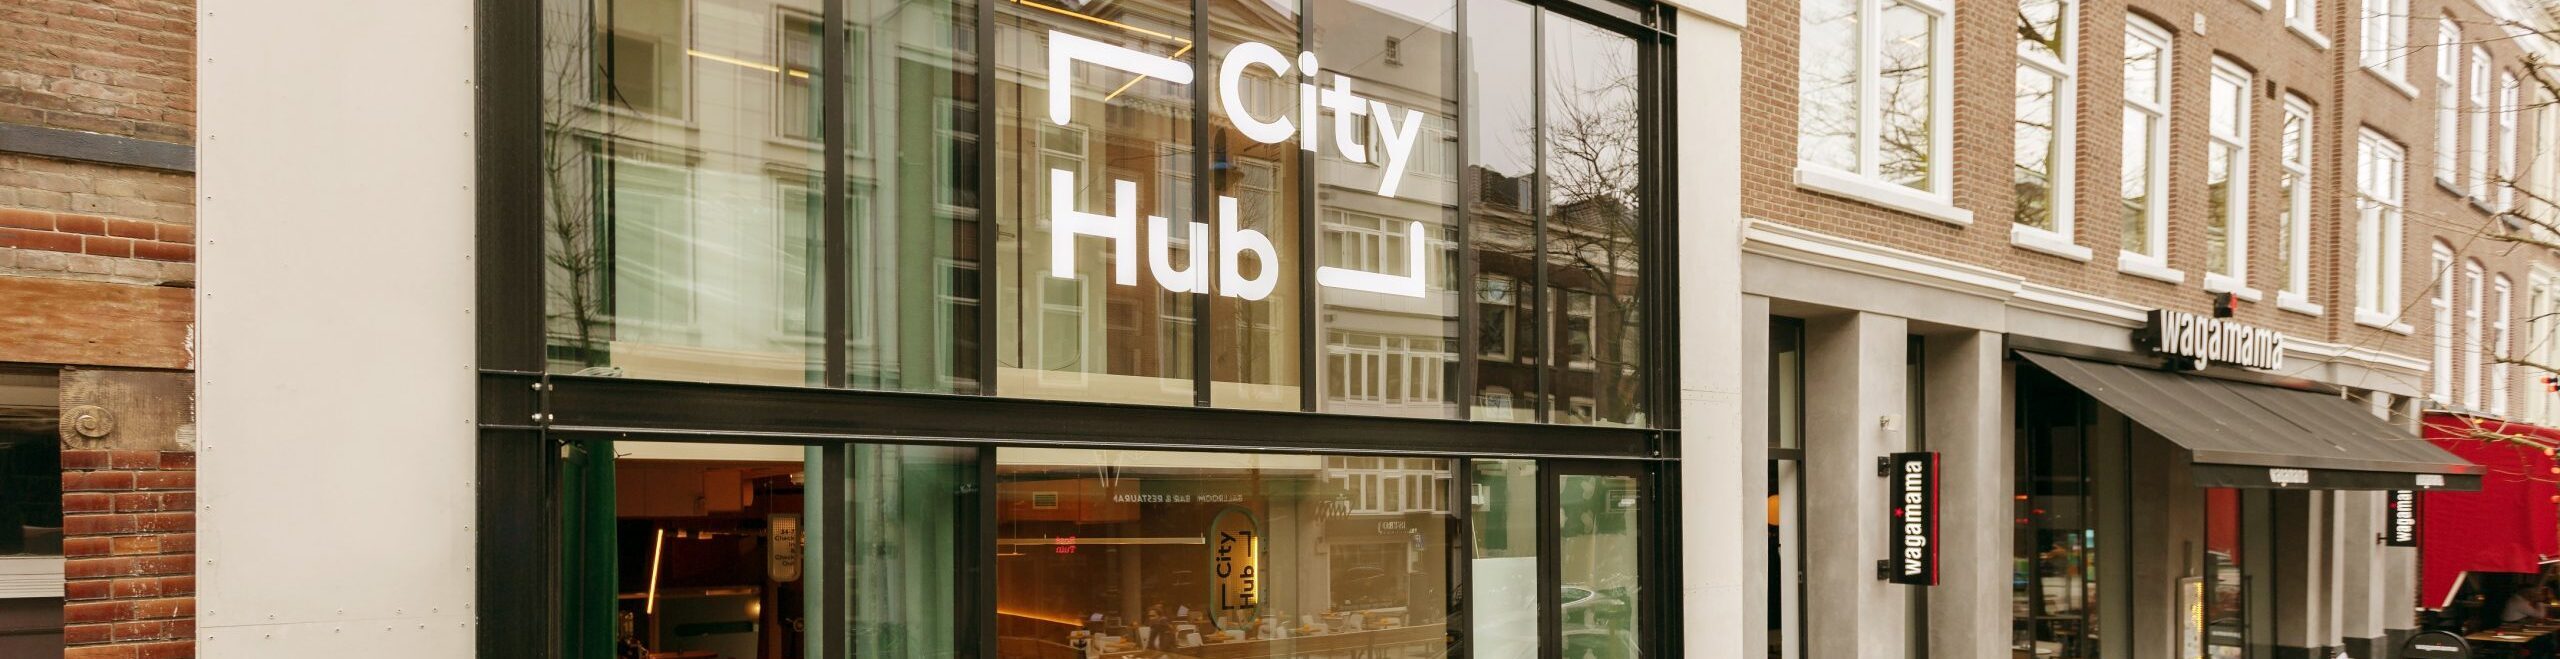 De tweede locatie: Cityhub Rotterdam